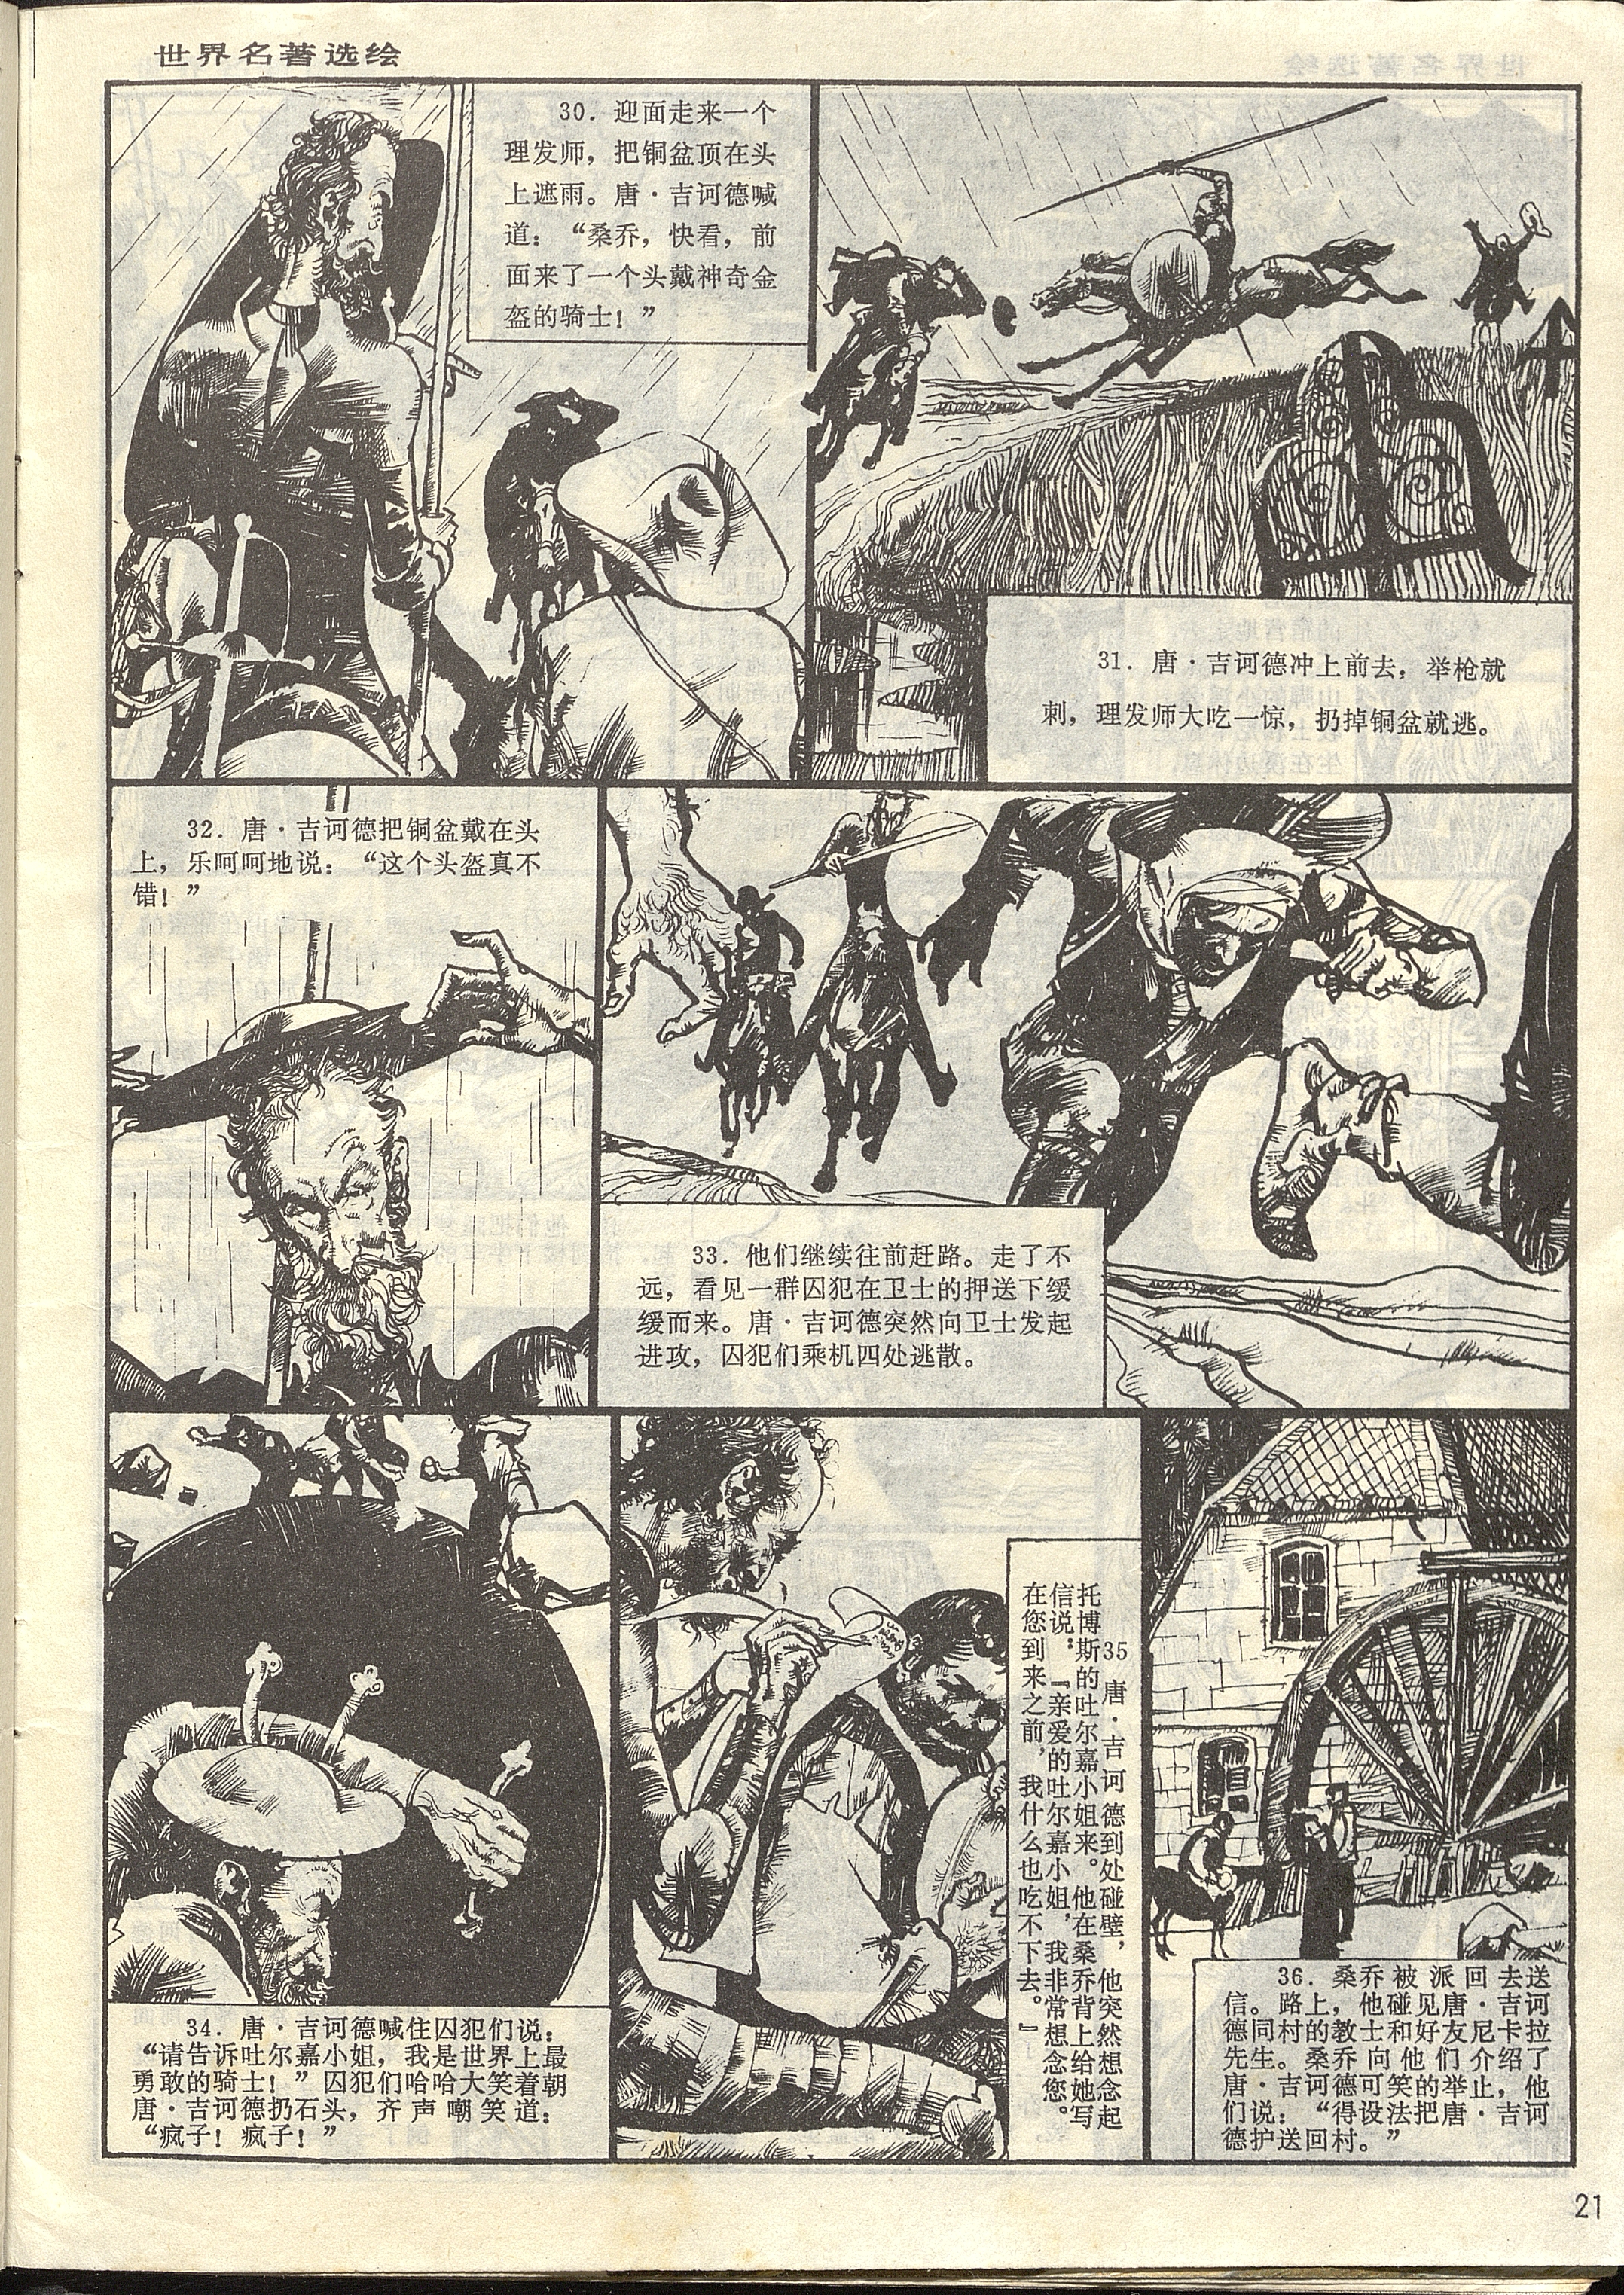 Don Quixote / obra original de Cervantes, recopilada por Yang      Libin y pinturas de Wang Kewei